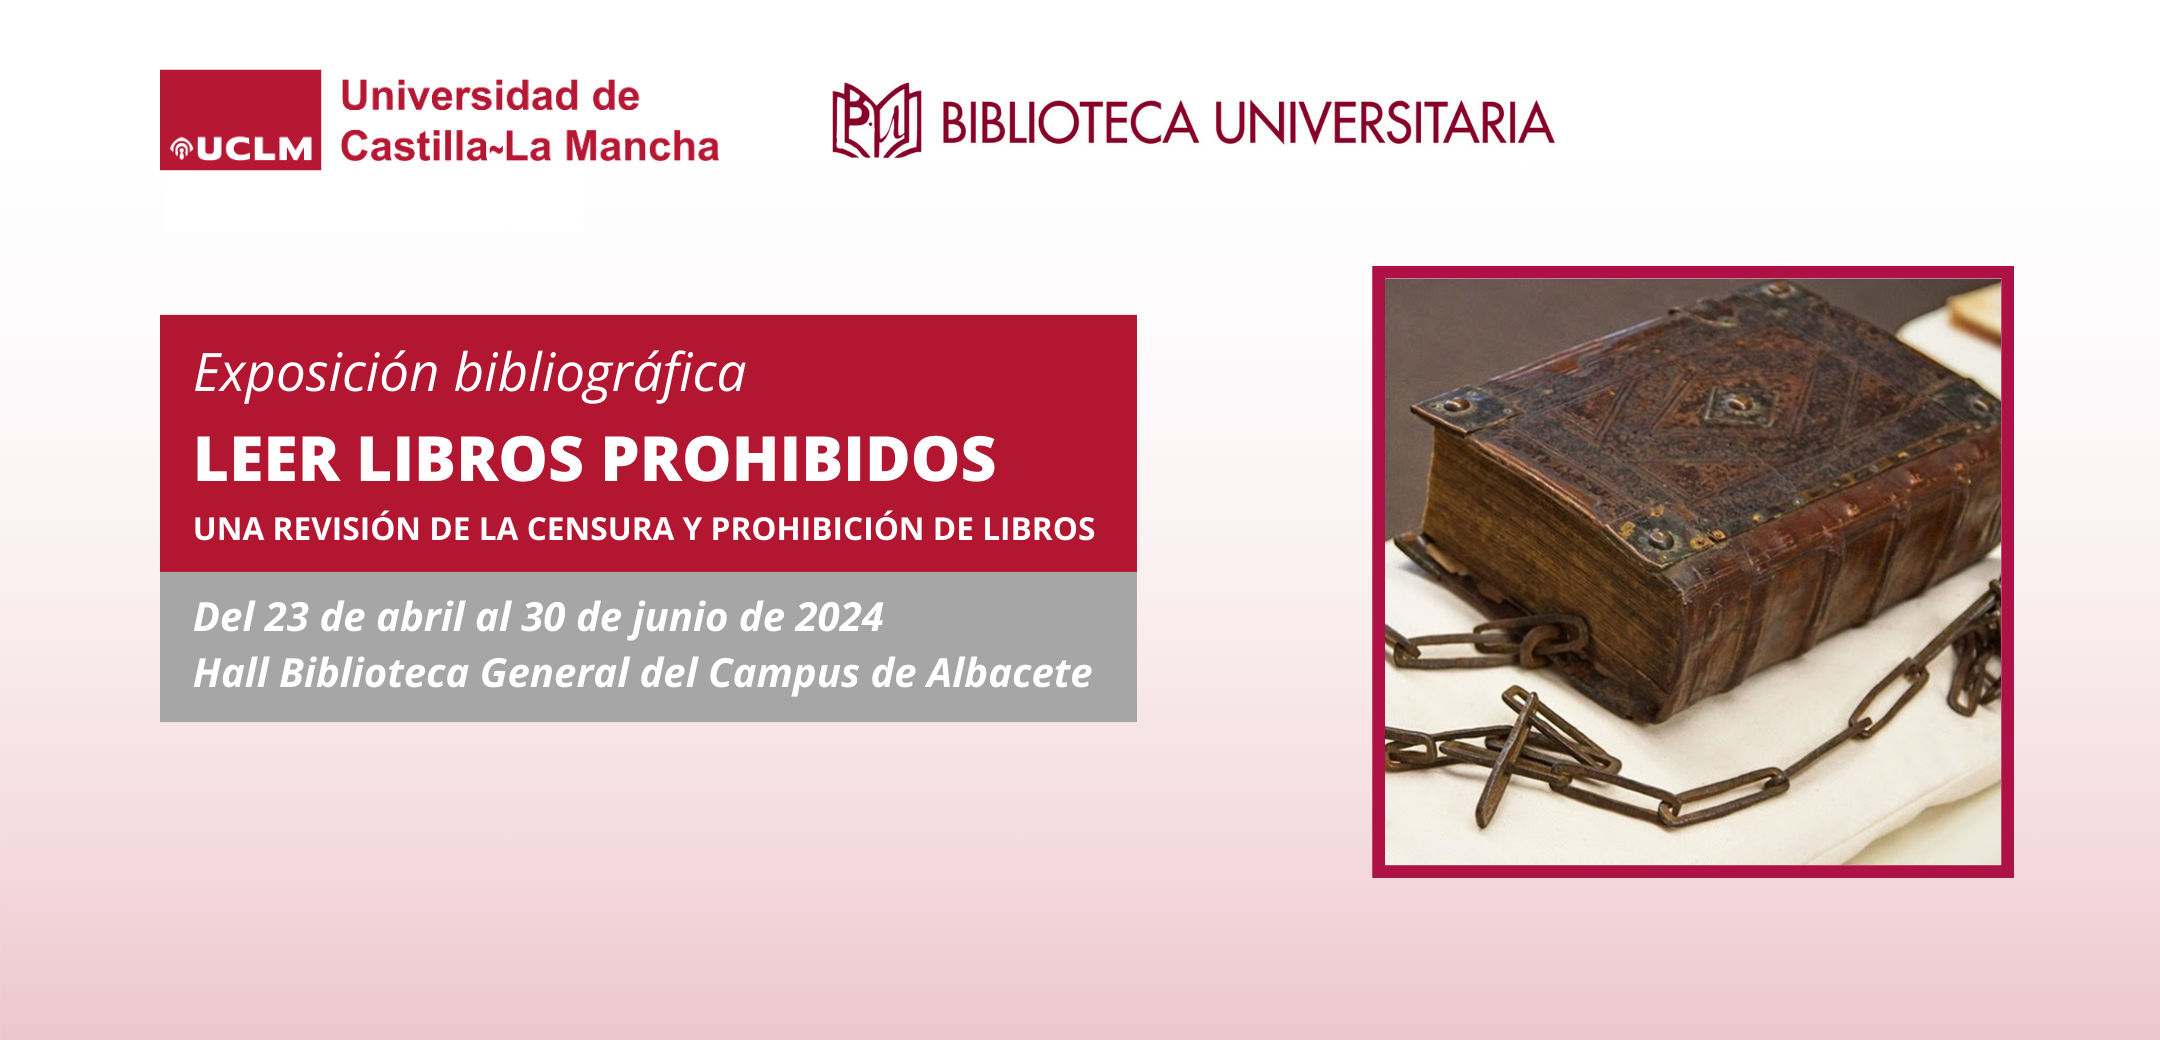 Exposición bibliográfica en la Biblioteca General de Albacete